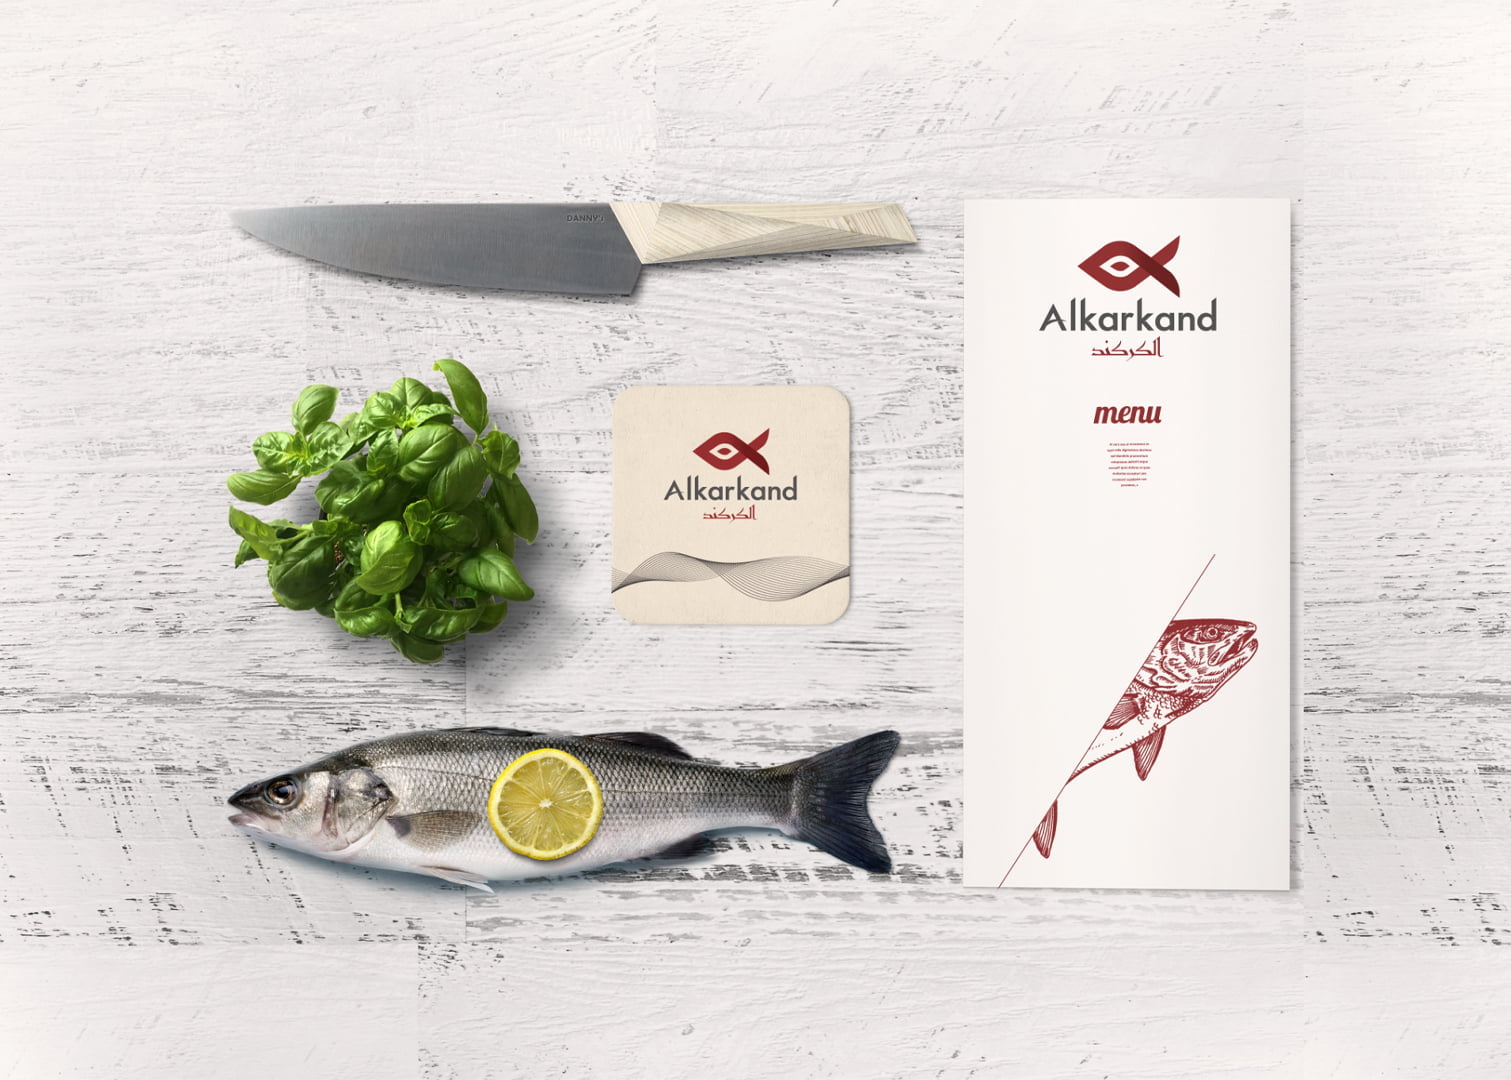 עיצוב זהות תאגידית של מסעדת אלקרקנד